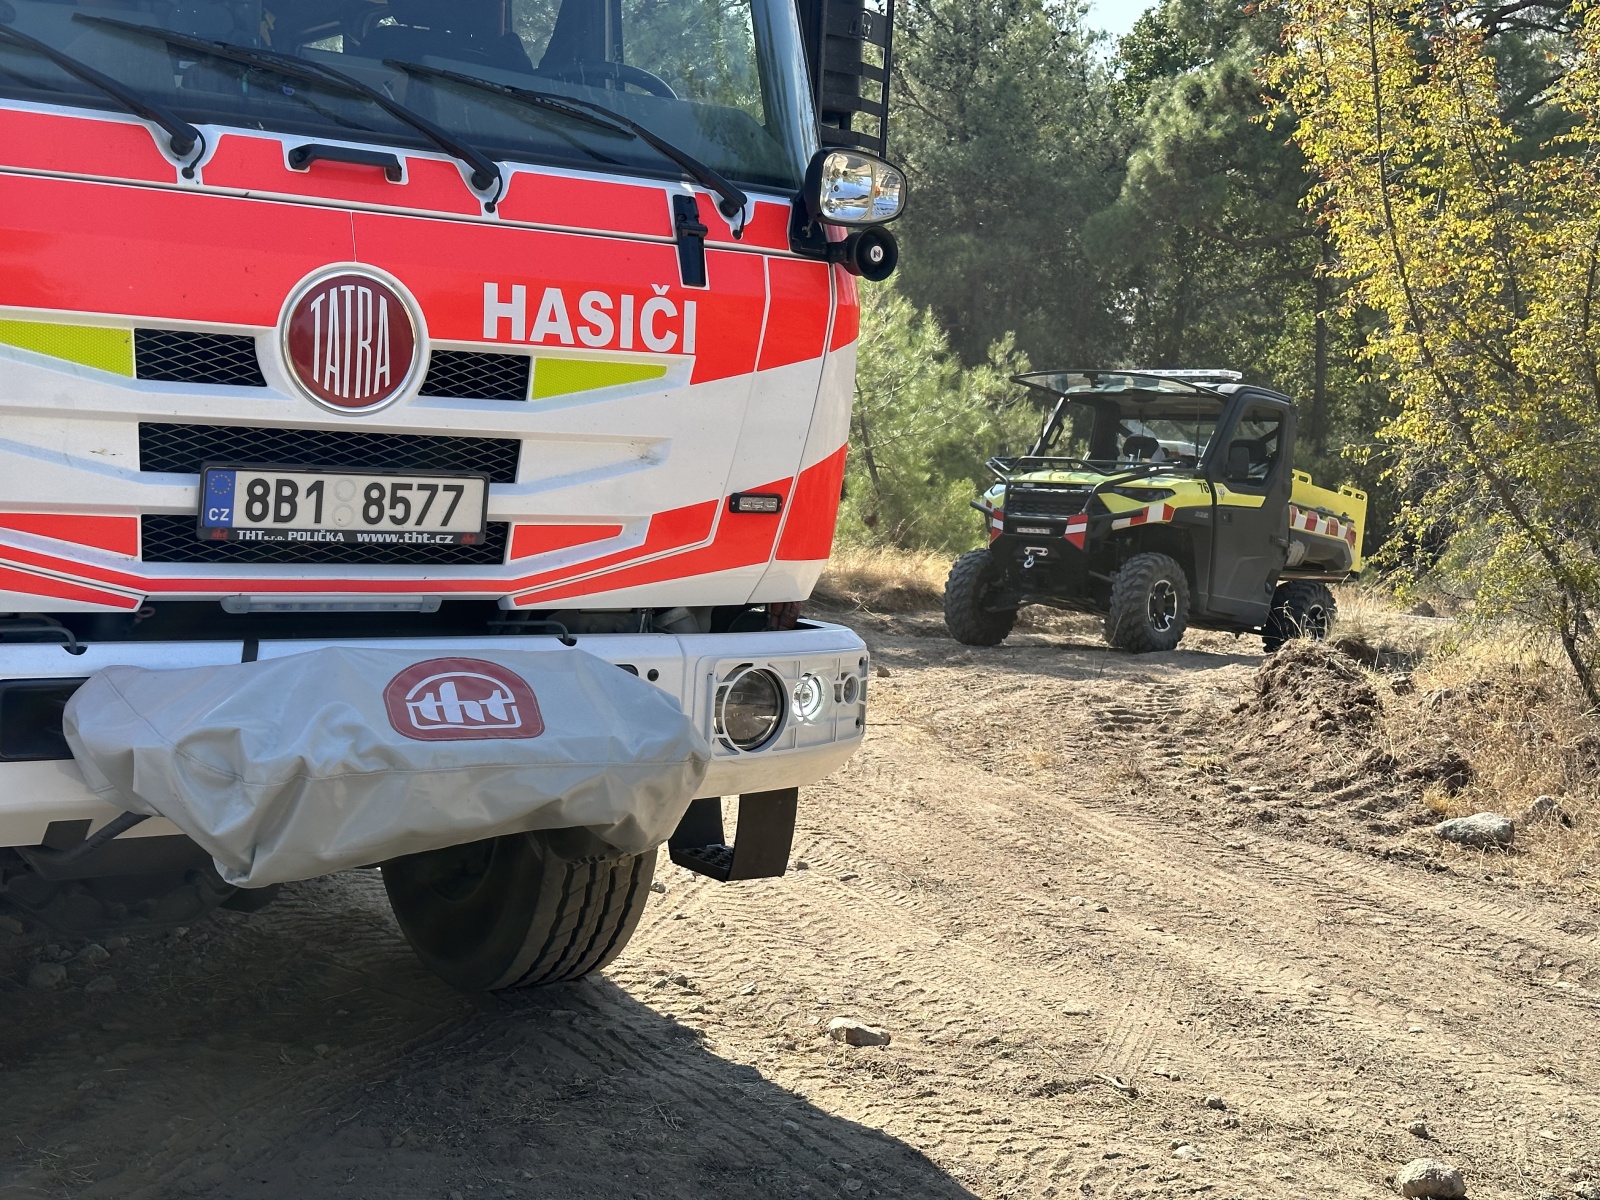 029-Pomoc českých hasičů při požárech v Řecku.JPG